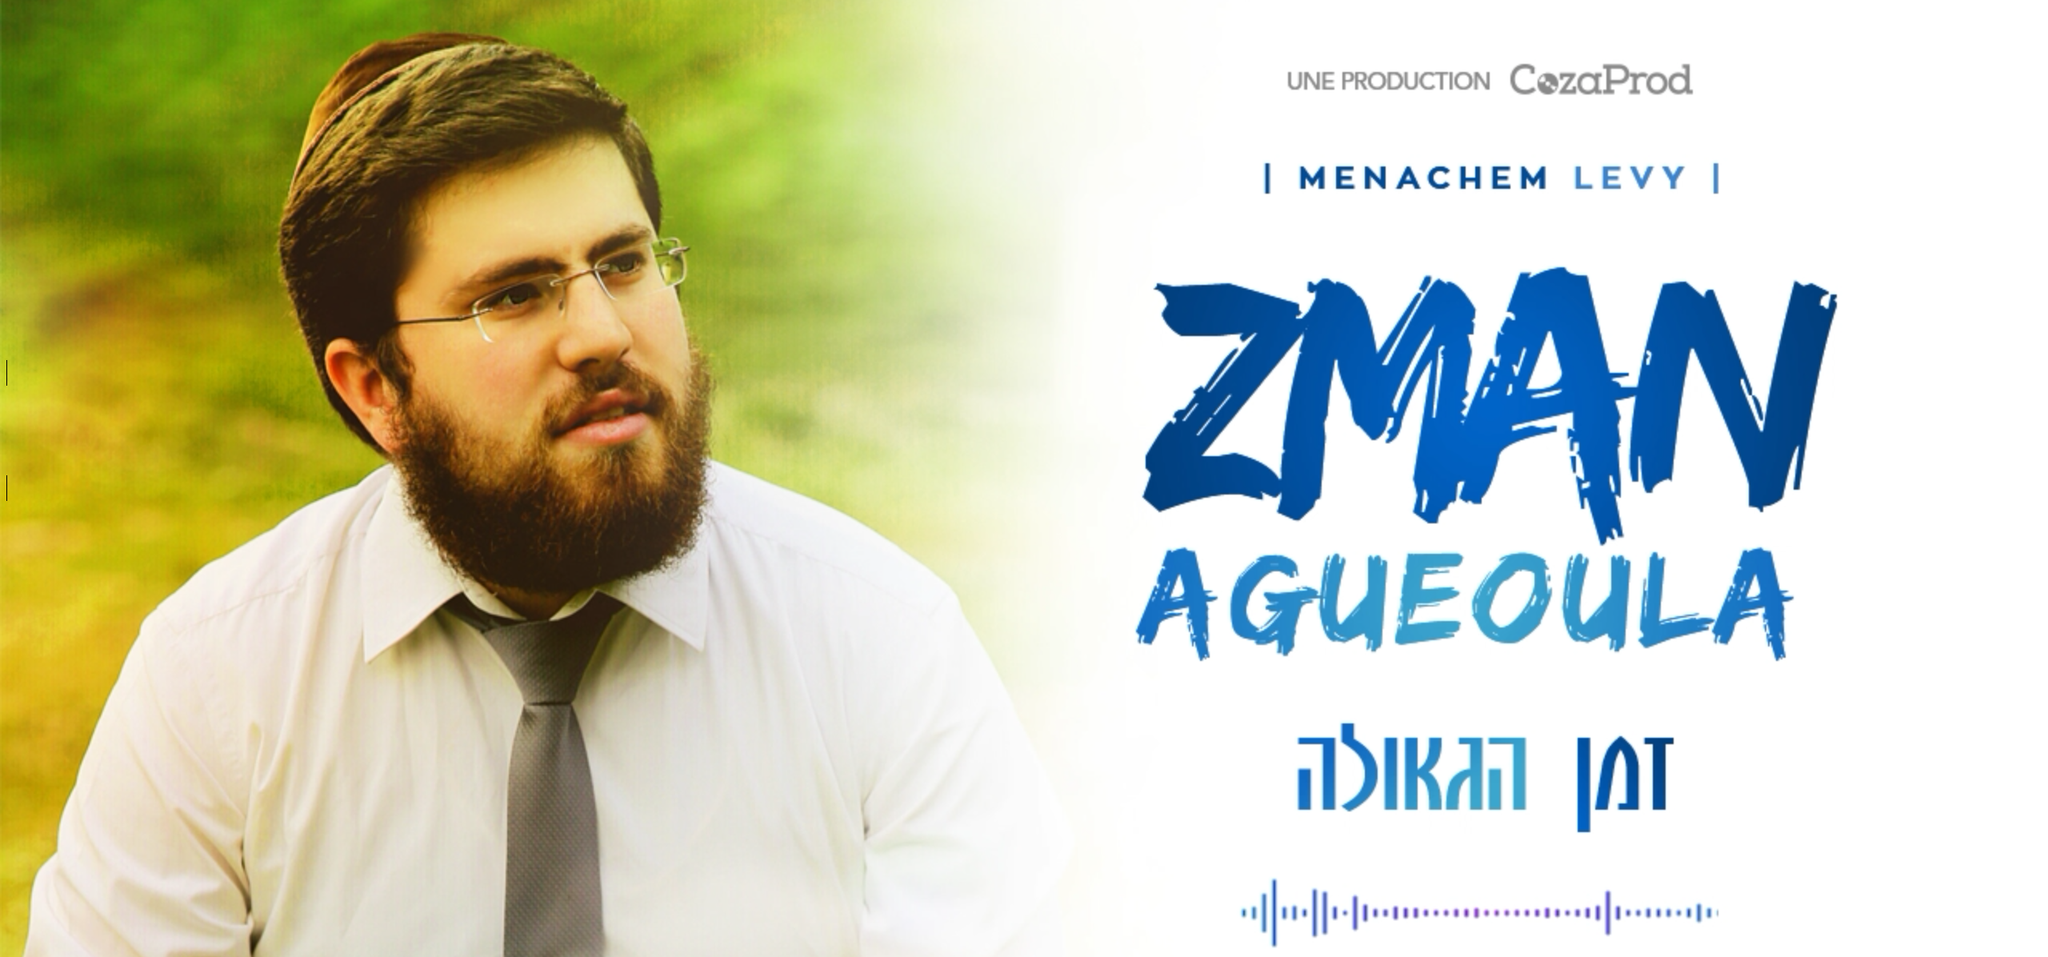 Menachem Levy - Zman Hageula (Single)